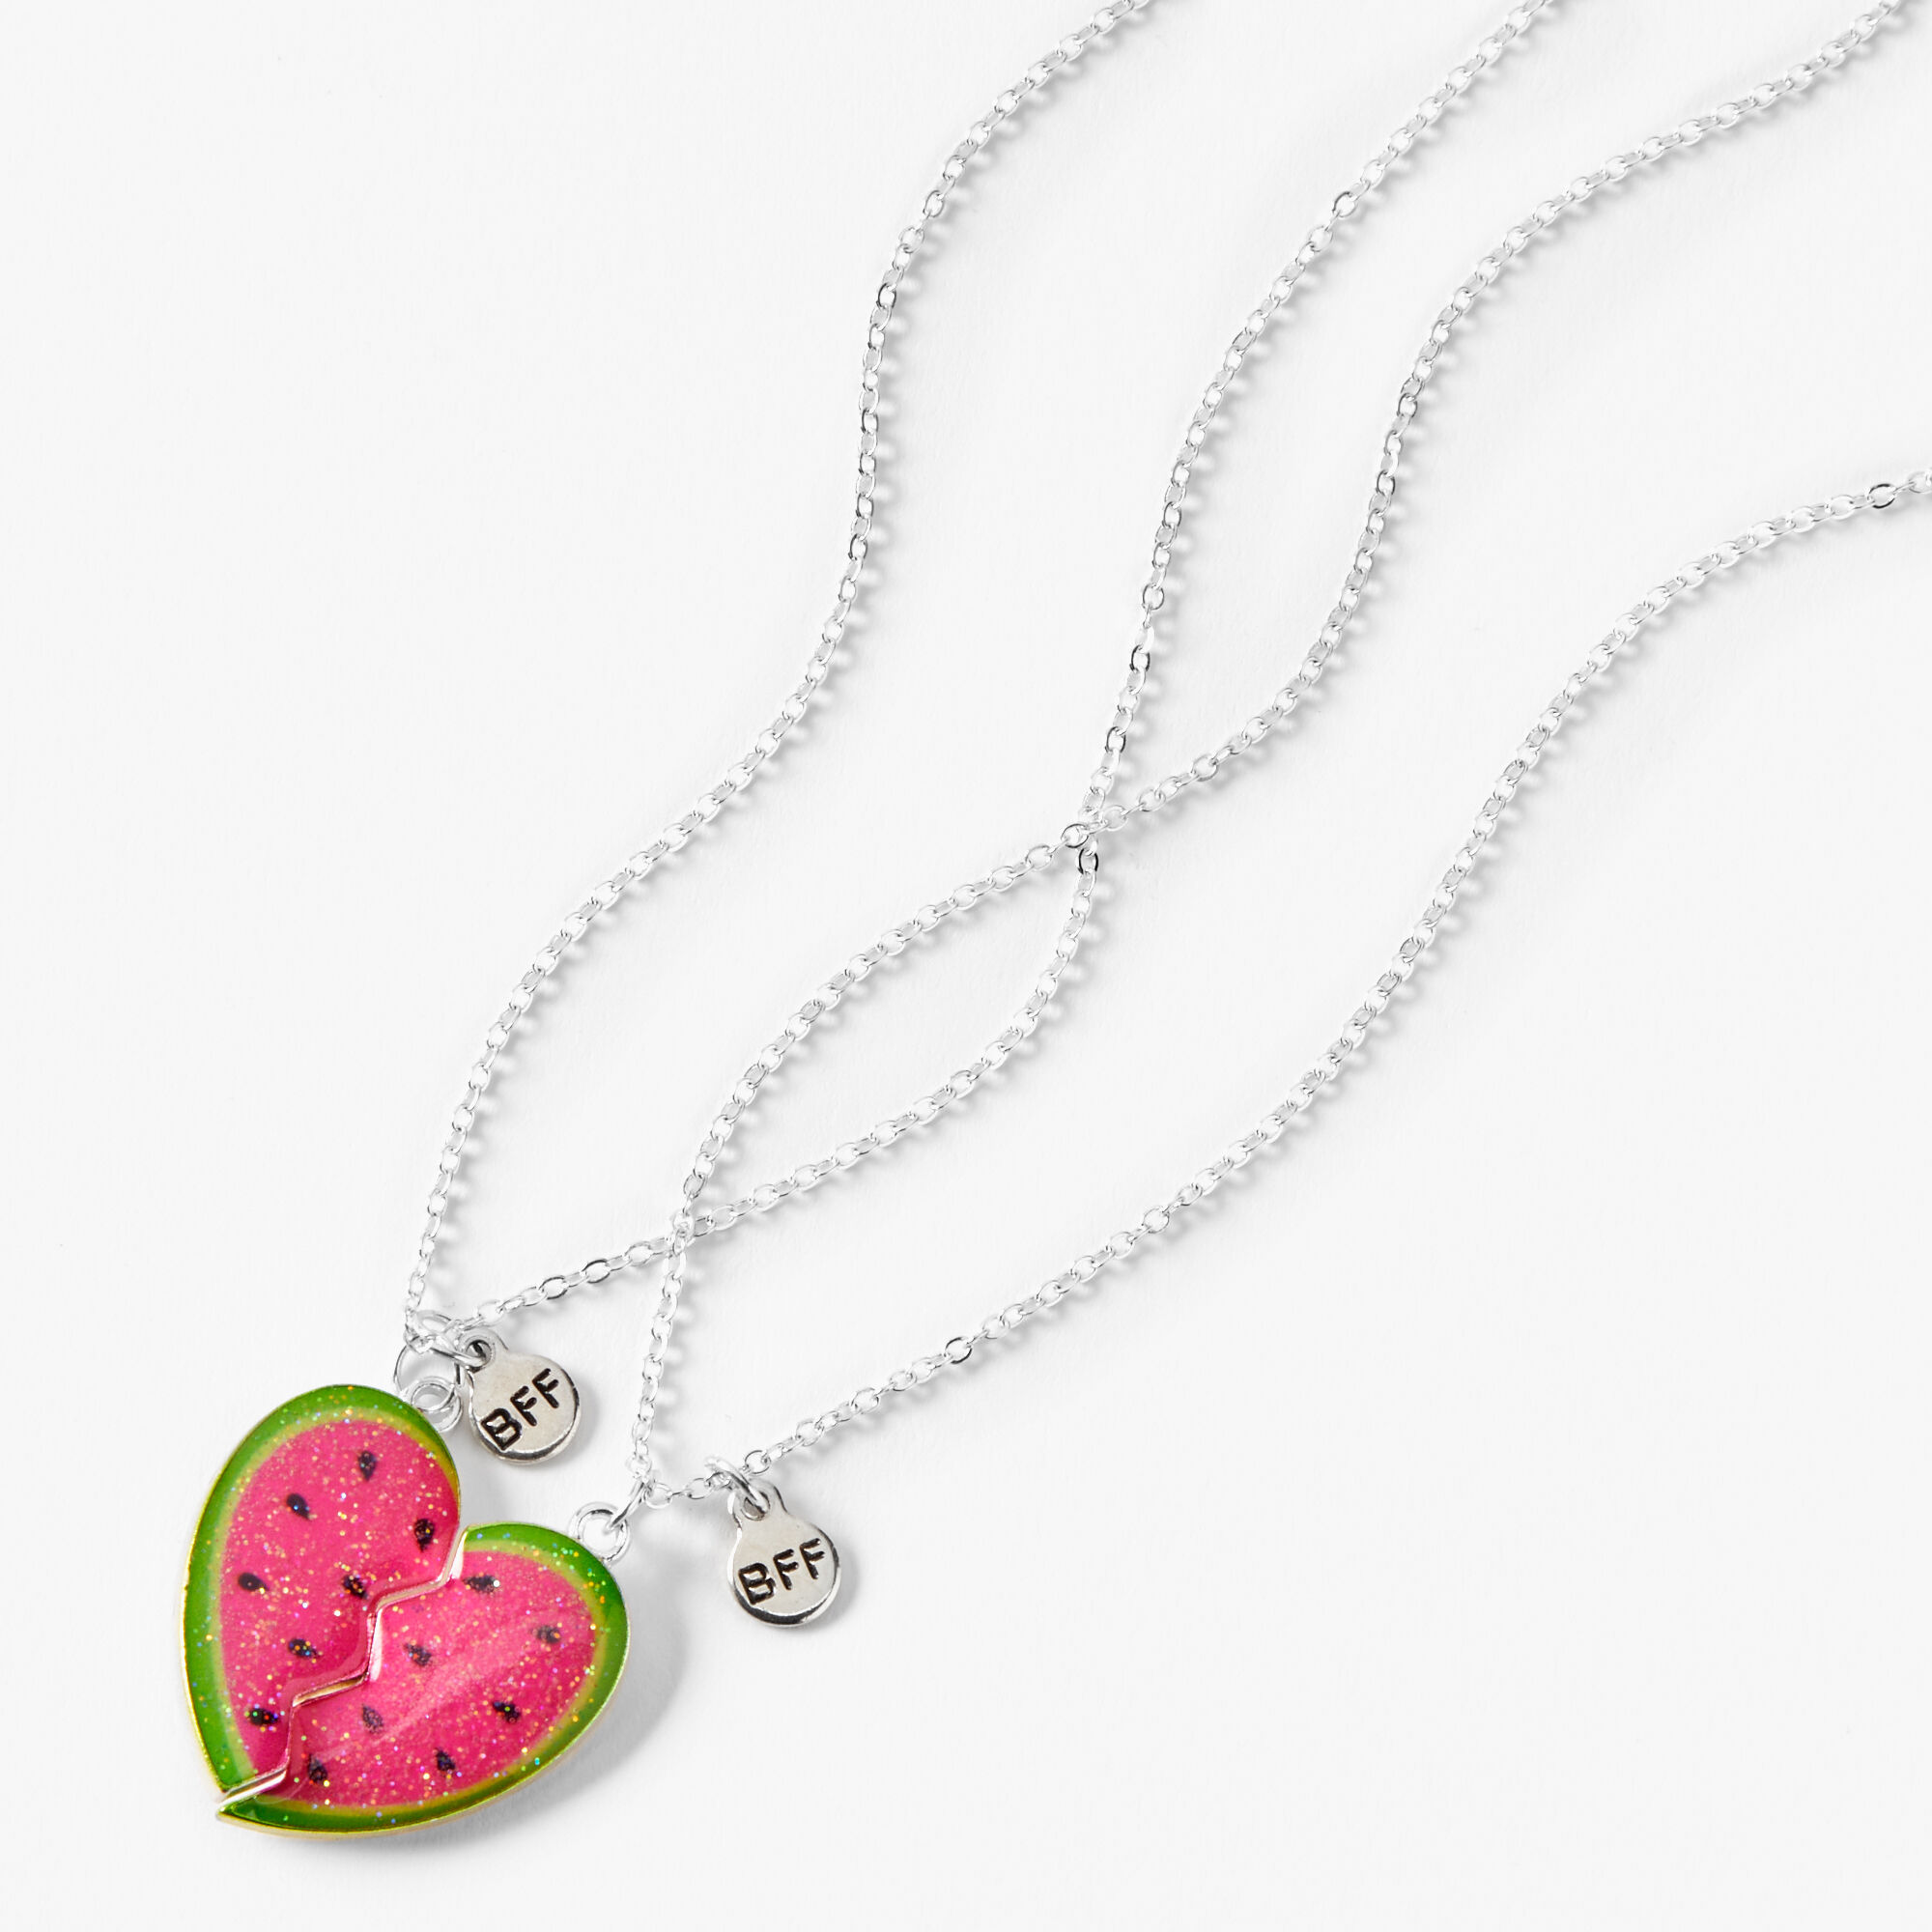 View Claires Best Friends Watermelon Split Heart Pendant Necklaces 2 Pack Silver information